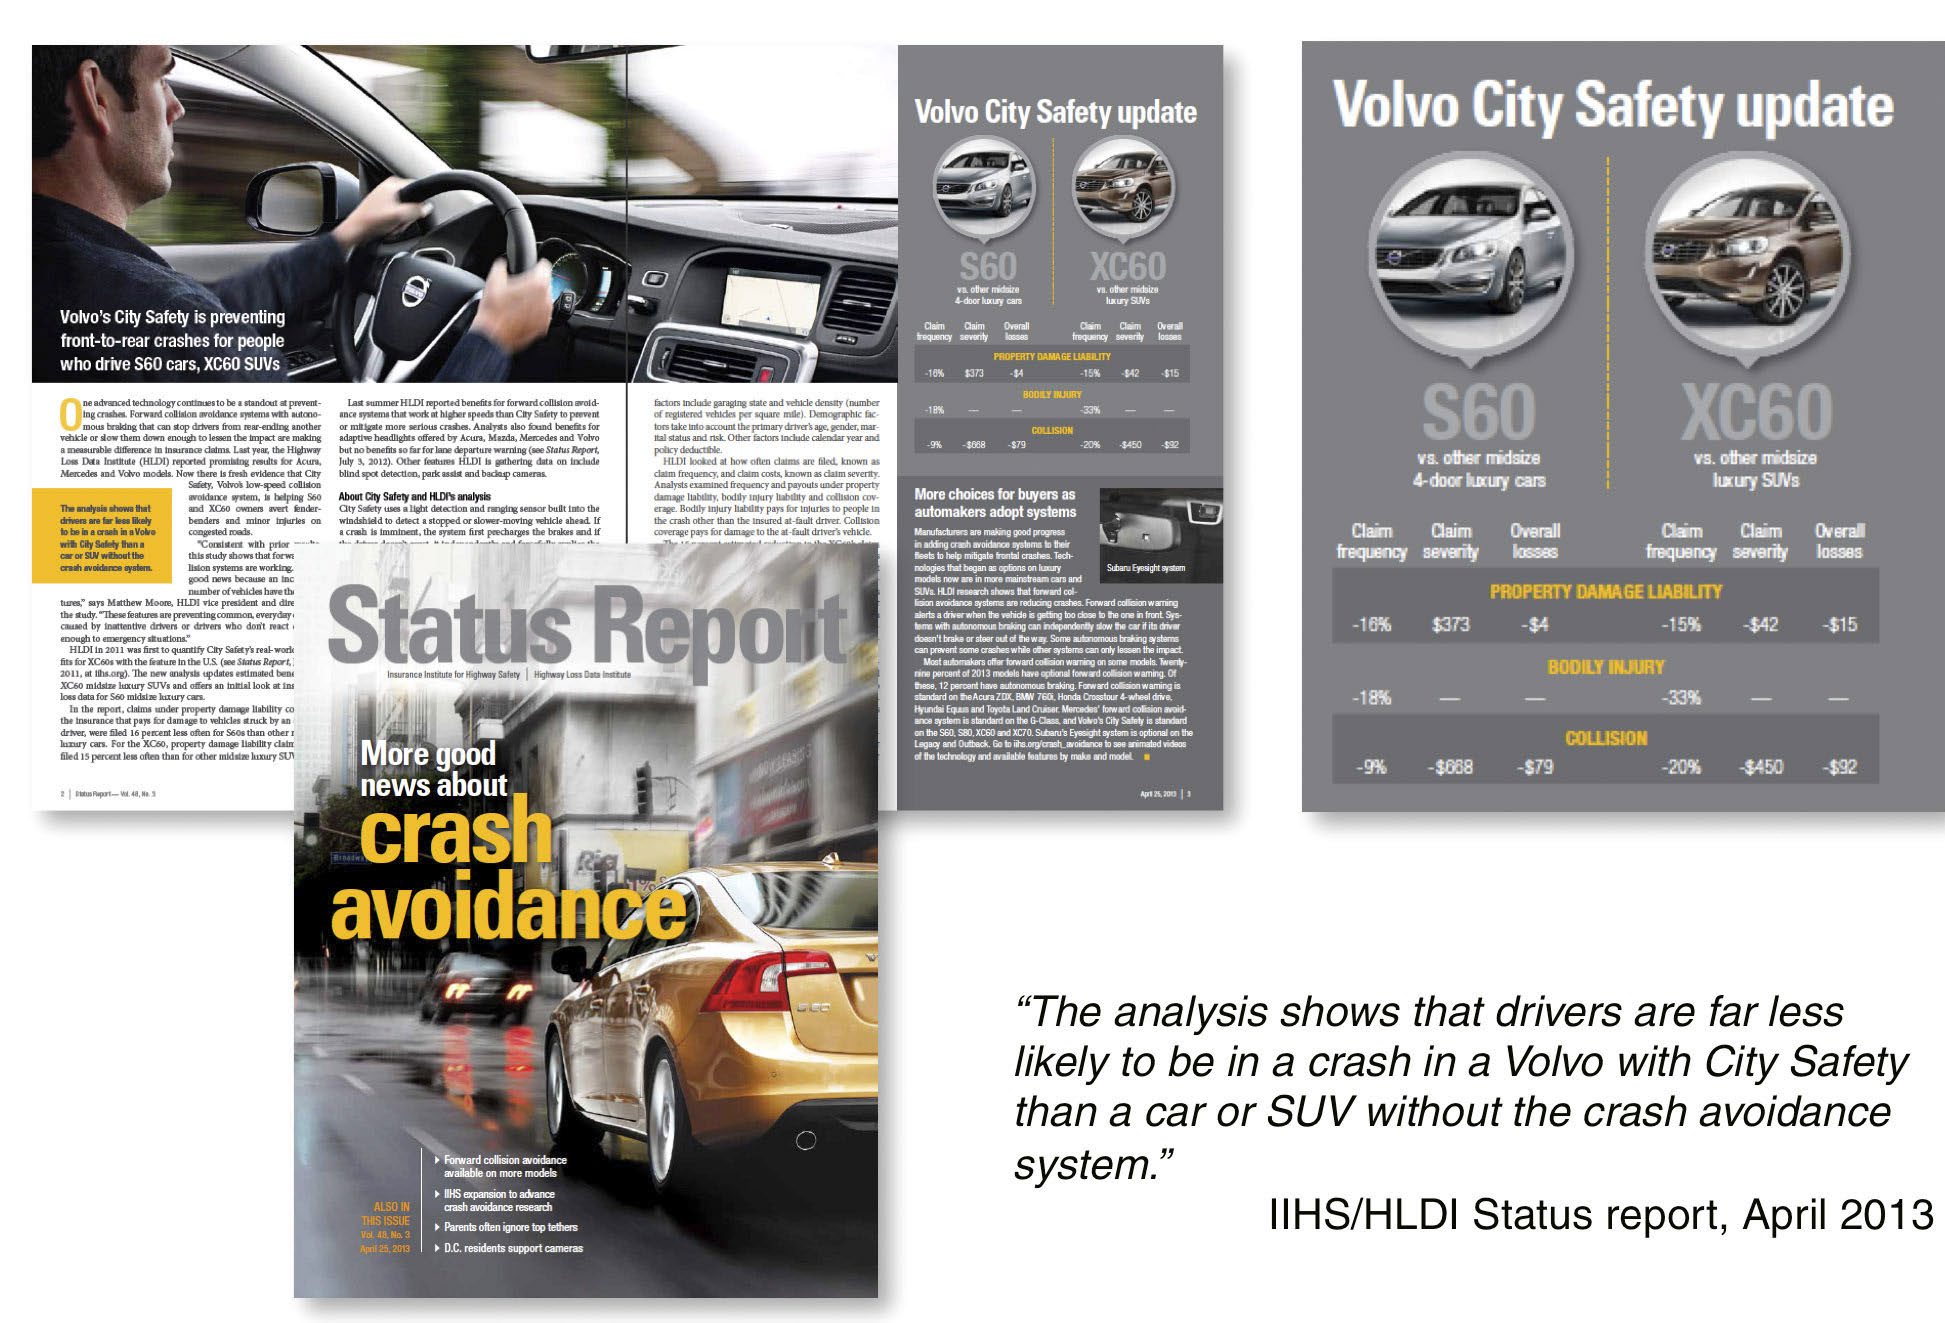 Viimeisimmät tutkimustulokset vahvistavat johtavan aseman Puolueettomat tutkimuslaitokset eri puolilta maailmaa vahvistavat Volvon johtavan aseman ajoneuvoturvallisuudessa.